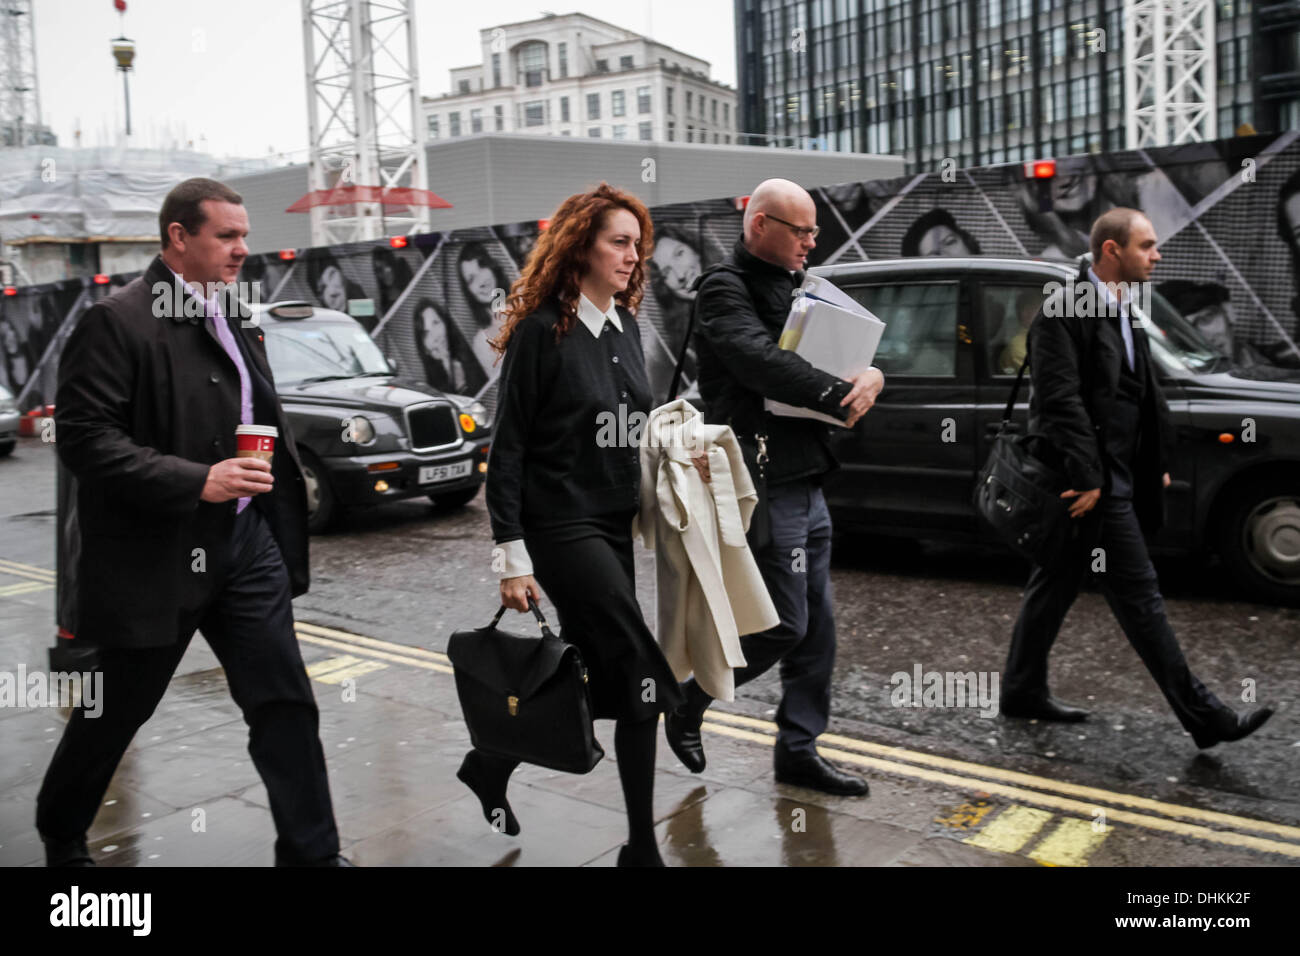 Londres, Royaume-Uni. 12 novembre 2013. Rebekah Brooks et Andy Coulson procès se poursuit à Old Bailey à Londres Crédit : Guy Josse/Alamy Live News Banque D'Images